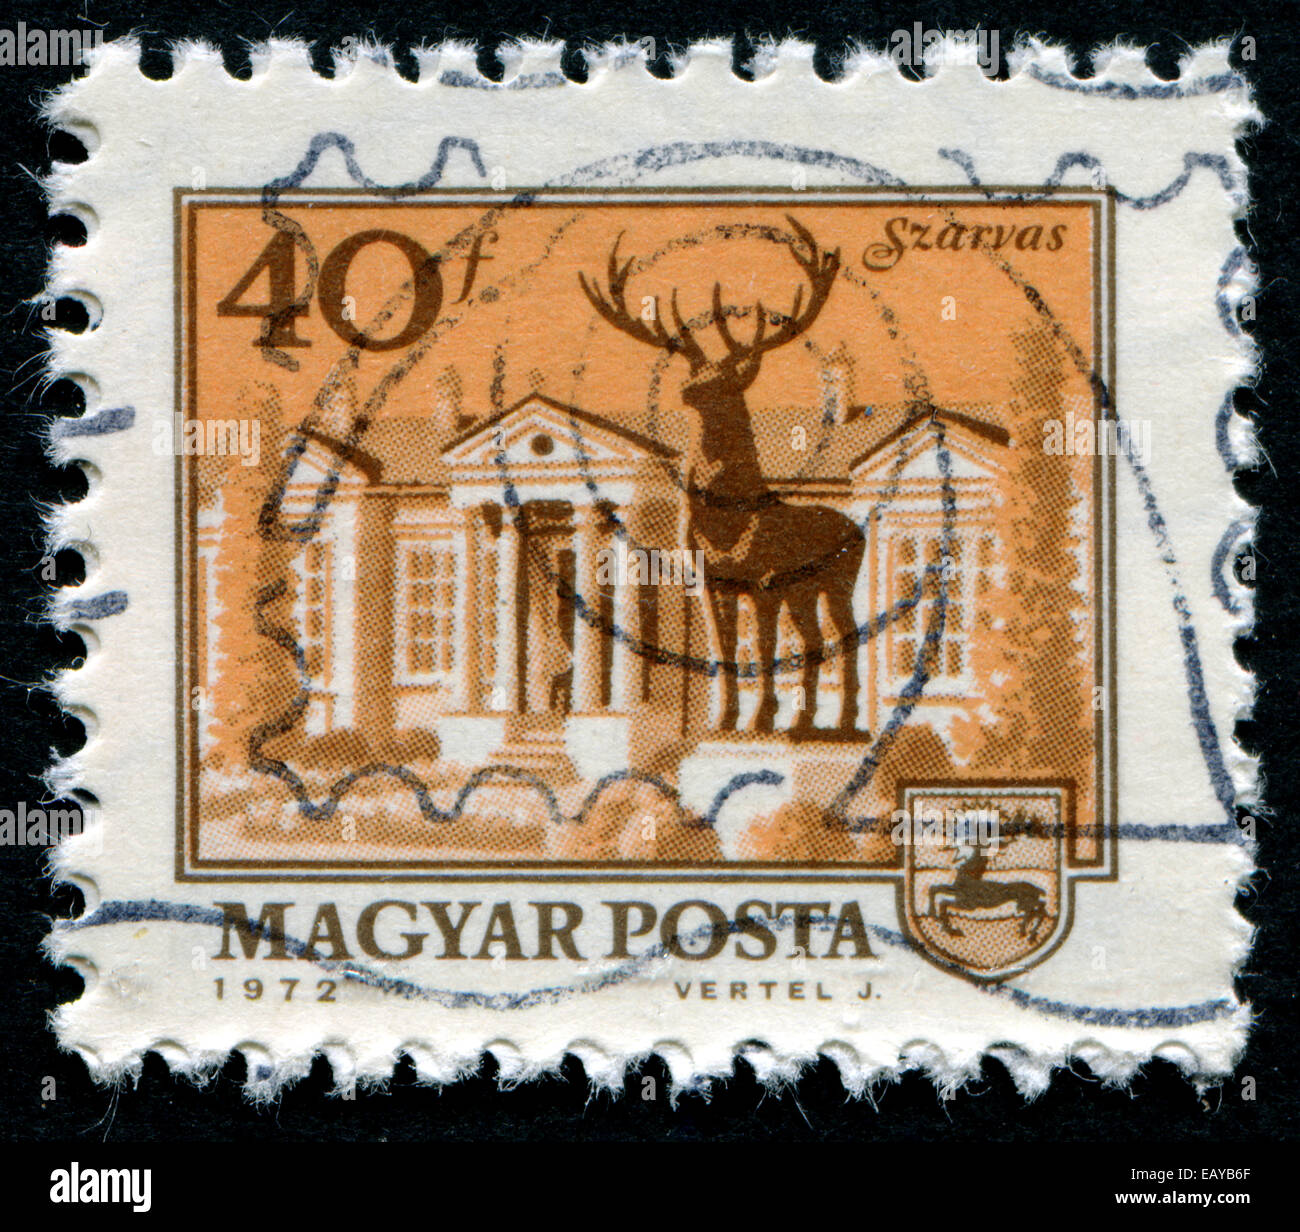 Ungarn - ca. 1972: Eine Briefmarke gedruckt in Ungarn zeigt die wichtigsten Platz Szarvas, ca. 1972. Stockfoto